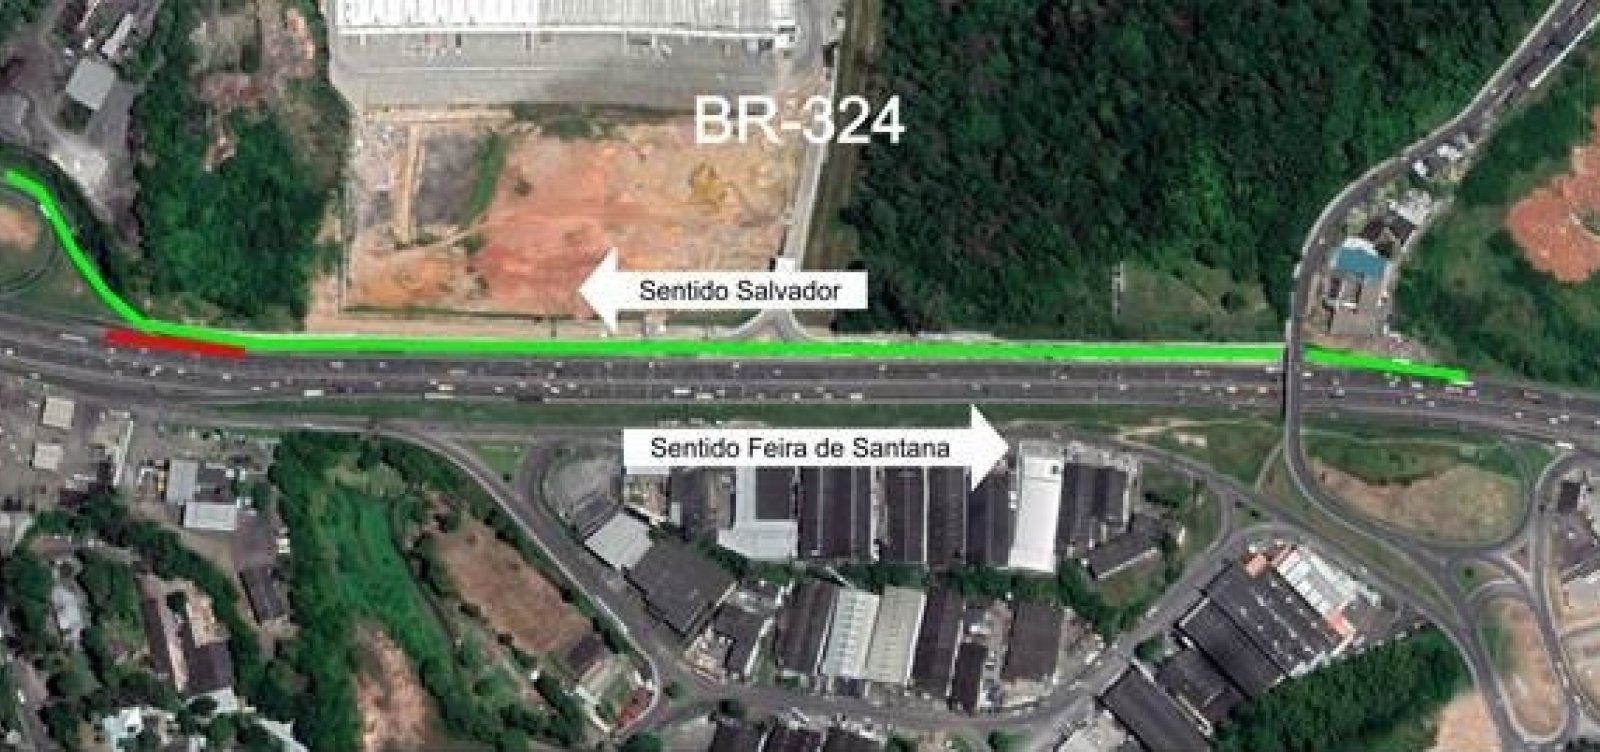 Acesso da BR-324 a bairros de Salvador é alterado; condutores precisam utilizar nova via marginal